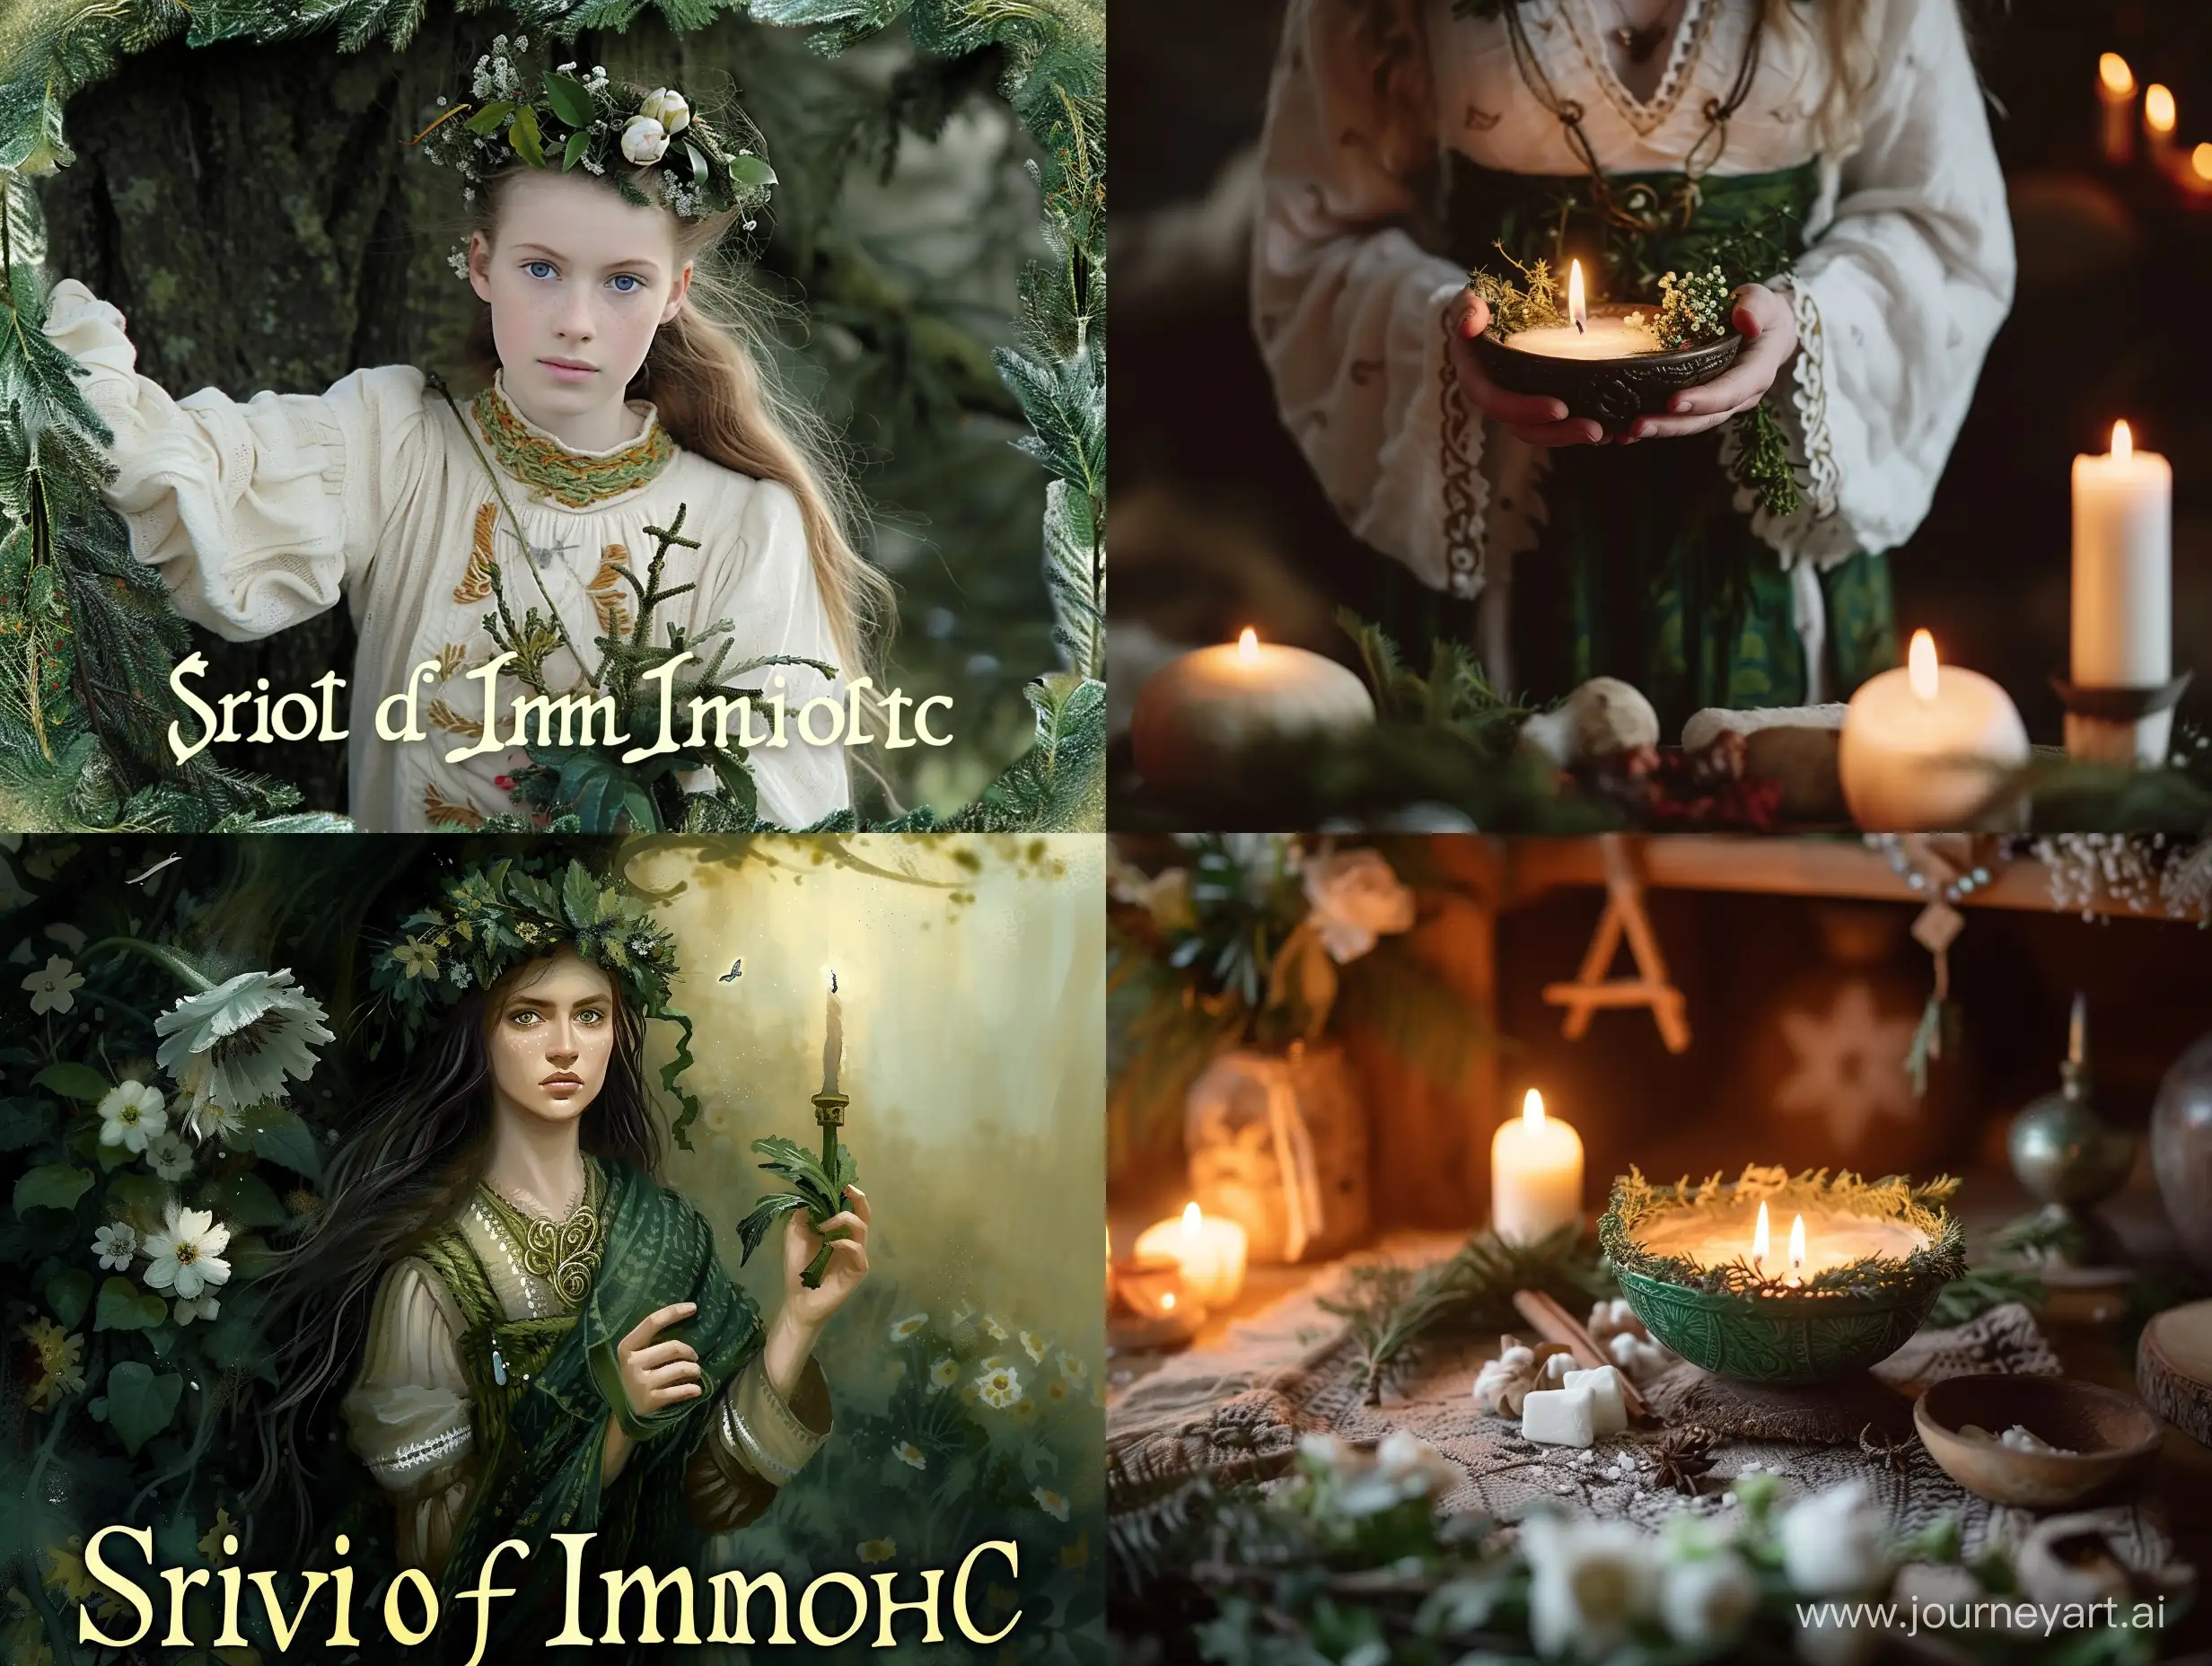 Enchanting-Imbolc-Celebration-with-Spirit-and-Harmony